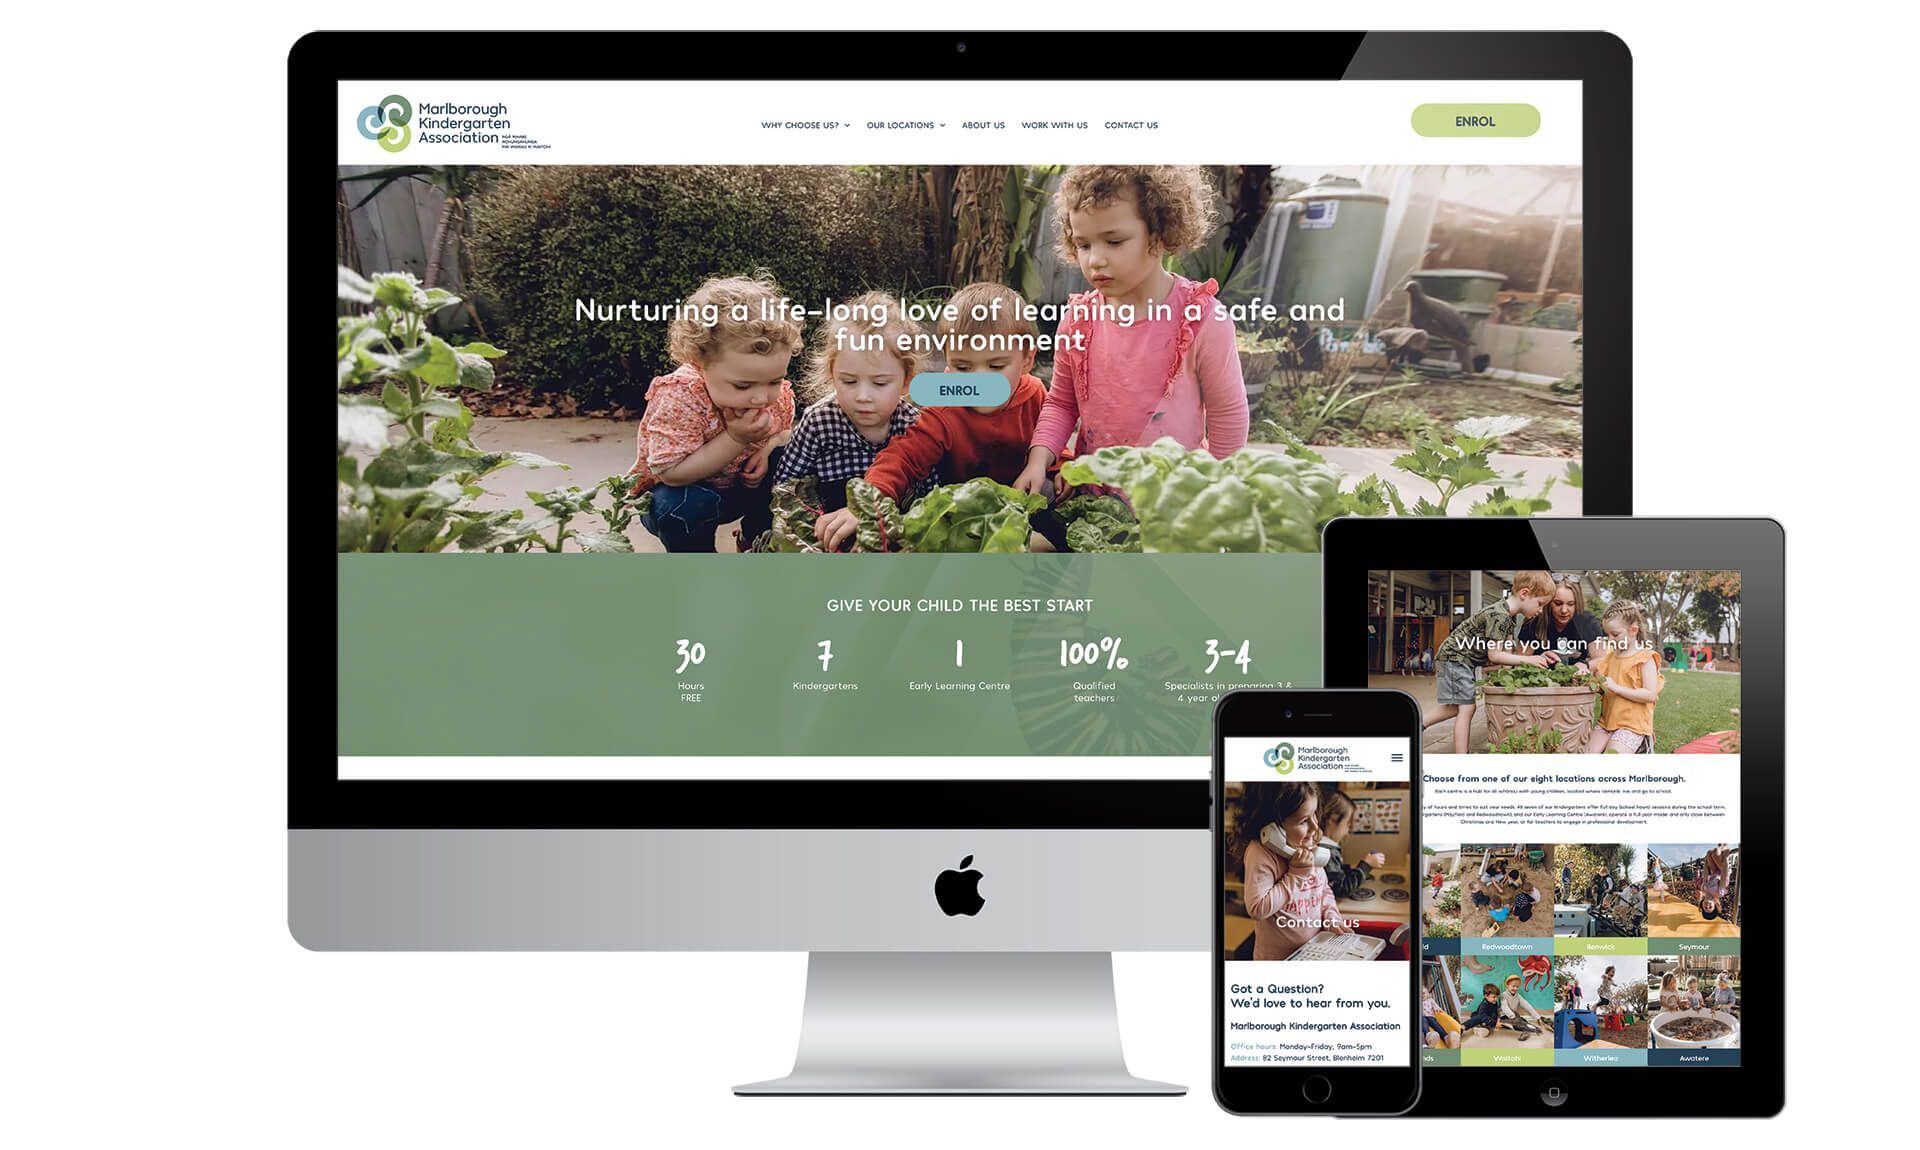 Marlborough Kindergarten Association website designed by Vanilla Hayes creative graphic design  studio in Blenheim, Marlborough, New Zealand